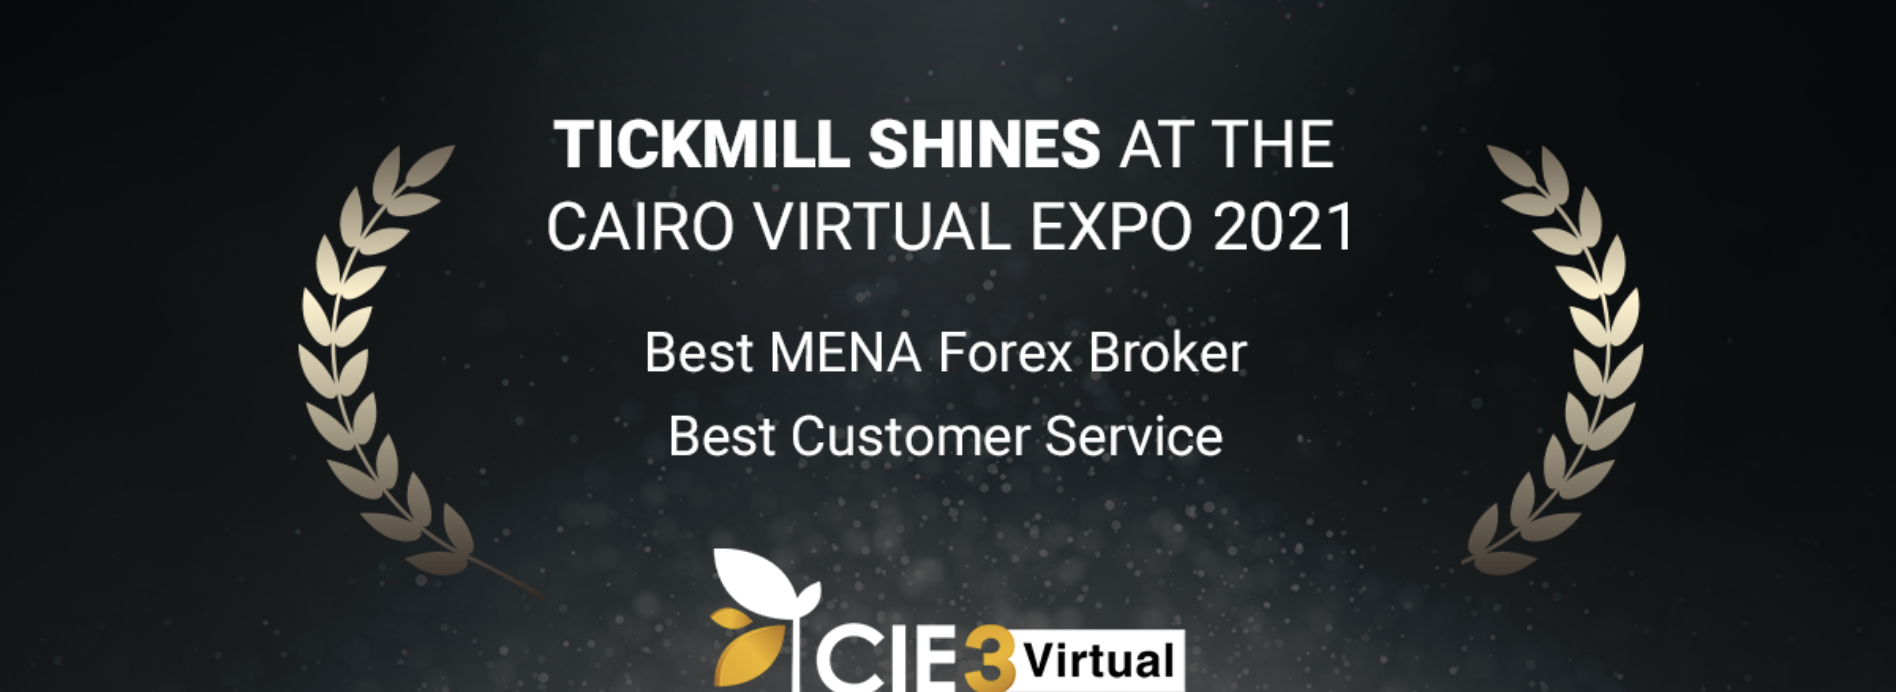 Tickmill tỏa sáng tại Cairo Virtual Expo 2021 với 2 giải thưởng mới!